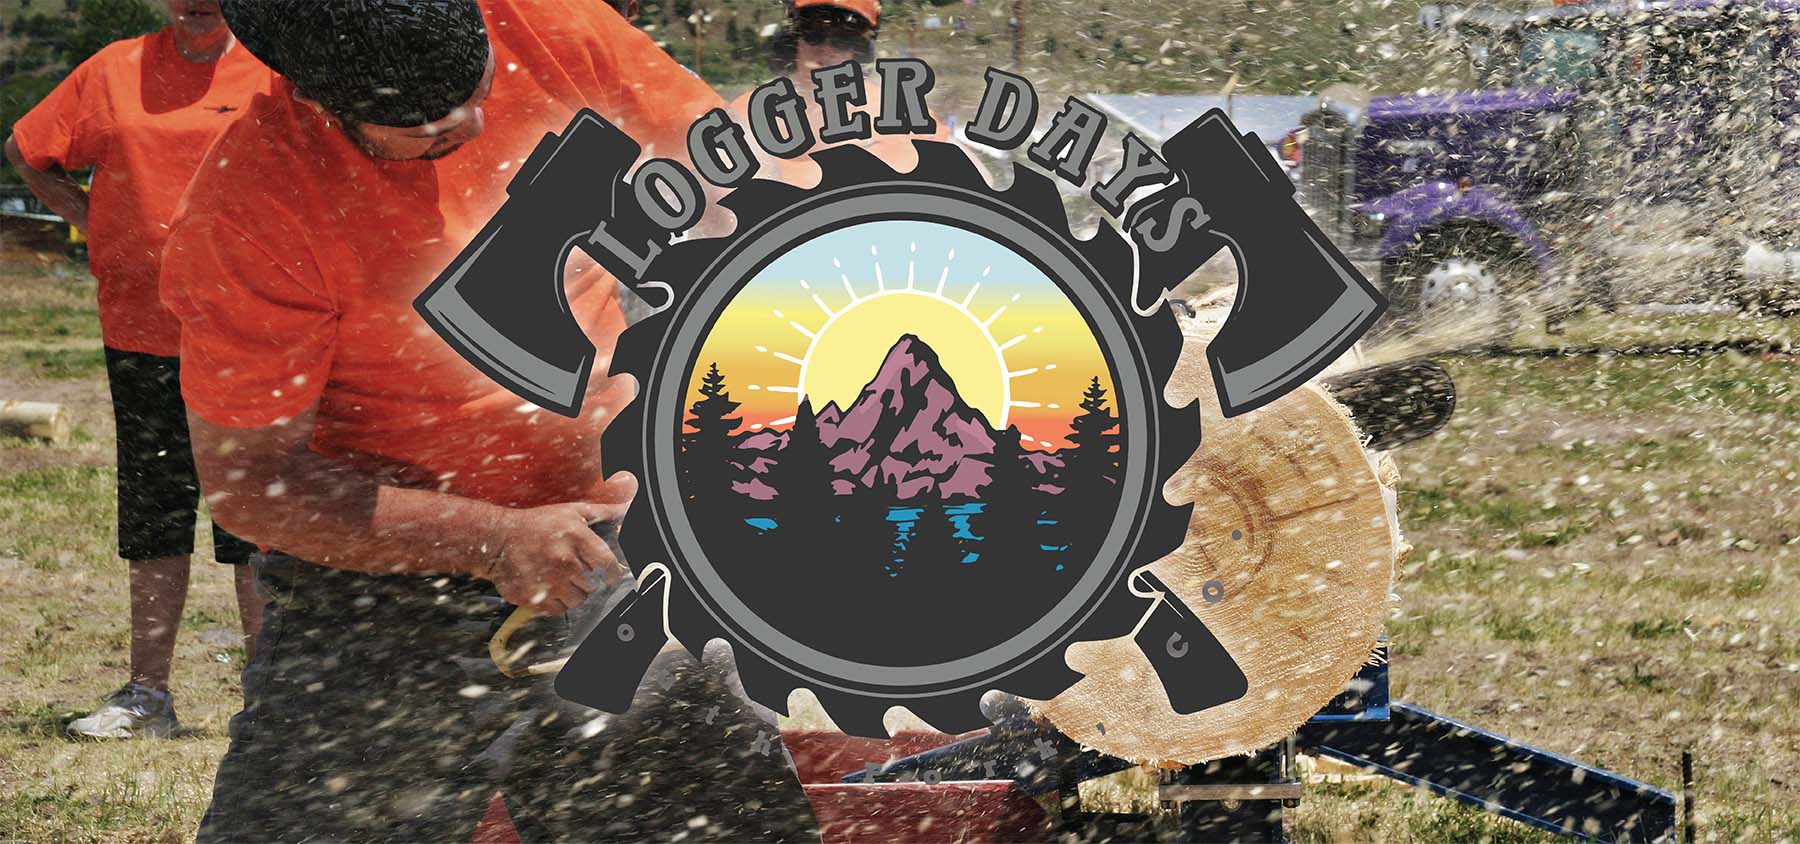 Logger Days in Creede Colorado, logo